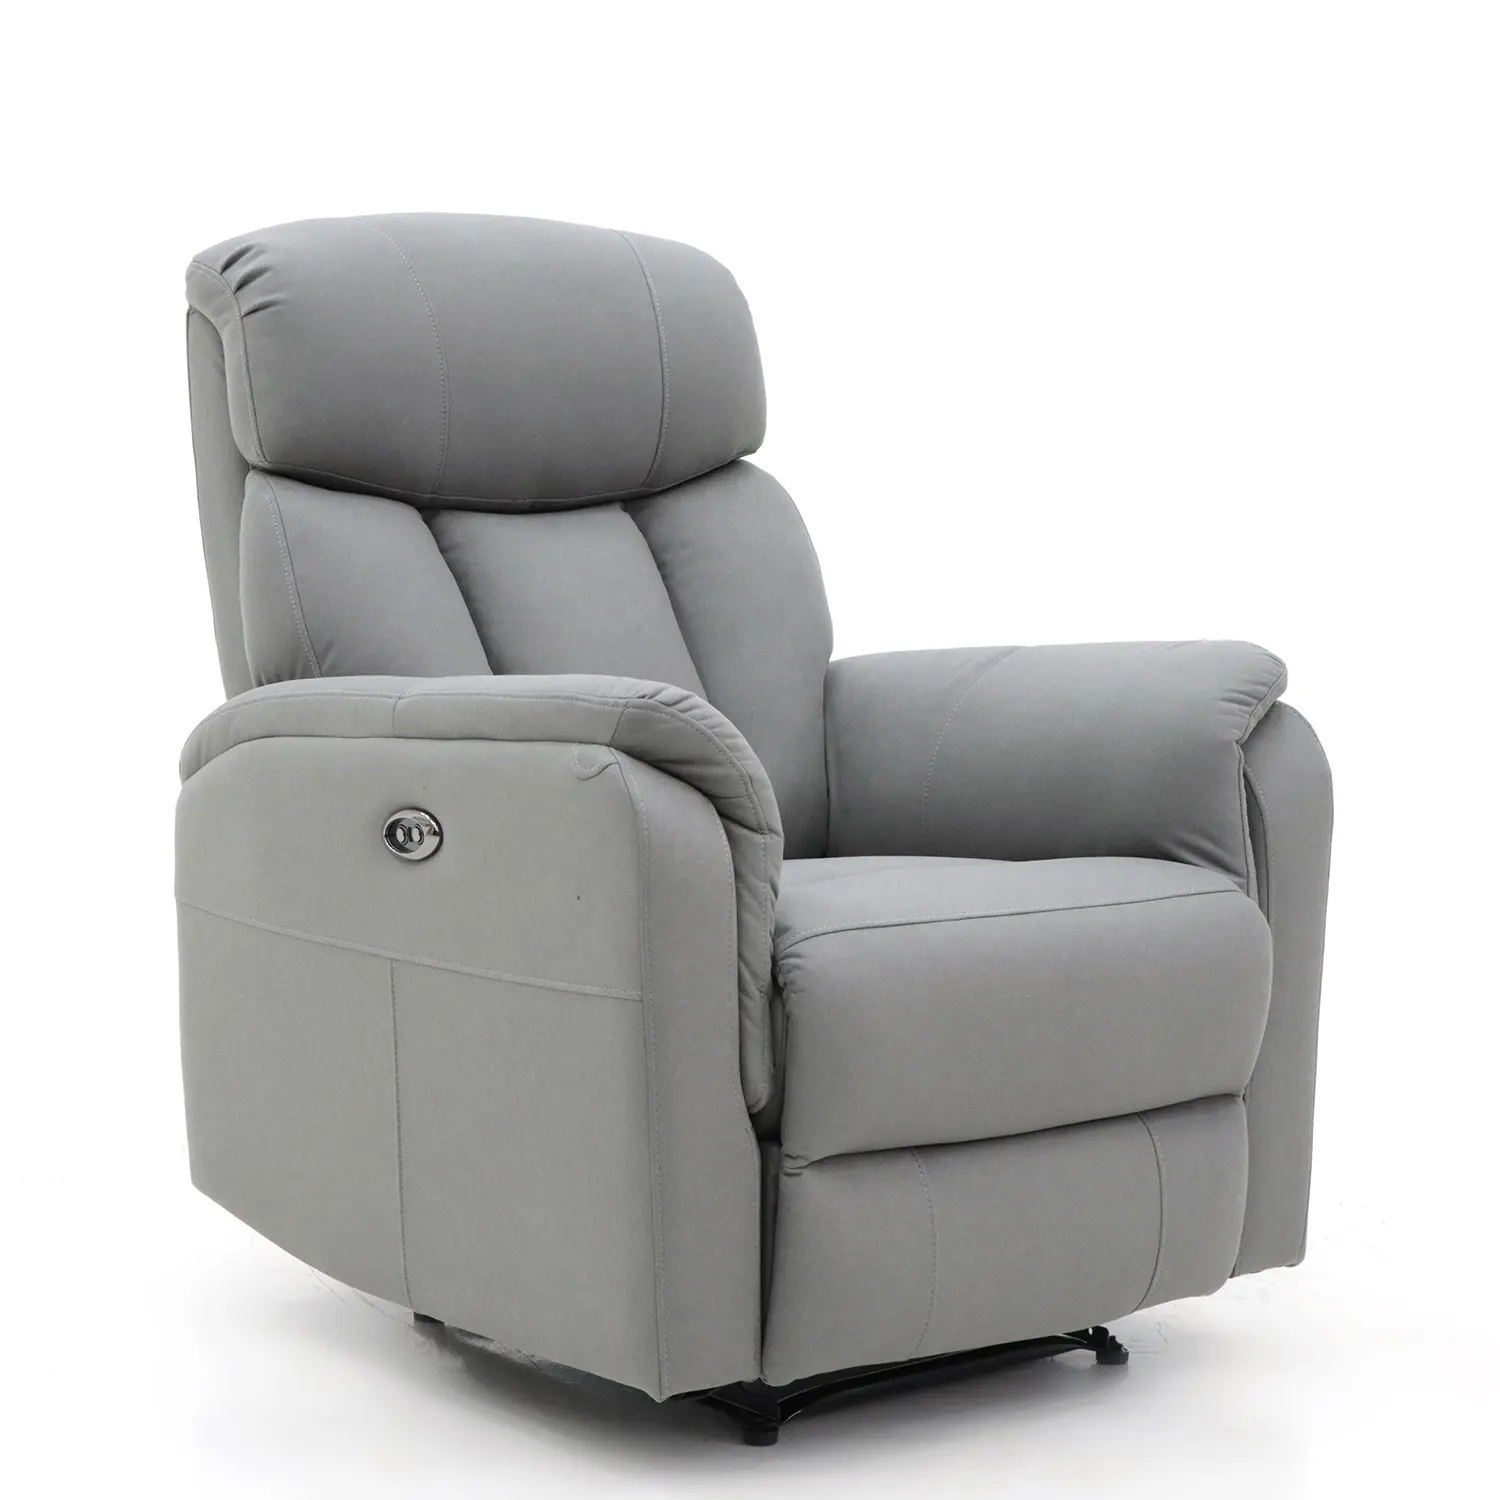 Geeksofa Furniture manuale/elettrico sedia reclinabile girevole in pelle di lusso massaggio per il tempo libero sedile aliante riscaldato poltrona per il tempo libero